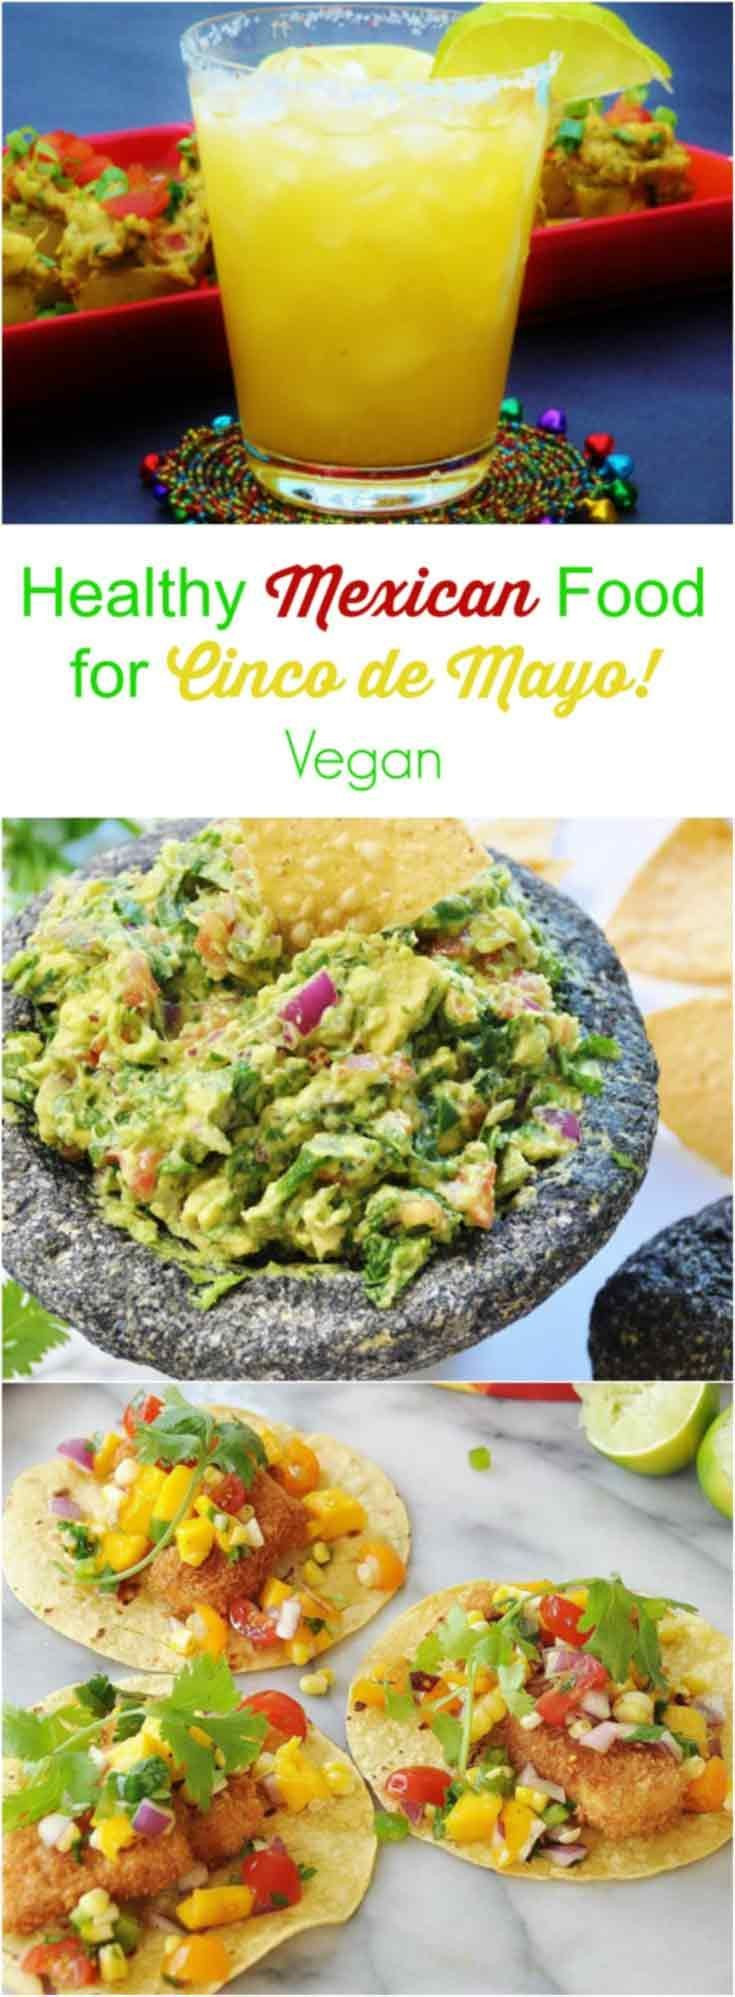 Vegetarian Cinco De Mayo Recipes
 Healthy Vegan Recipes for Cinco de Mayo